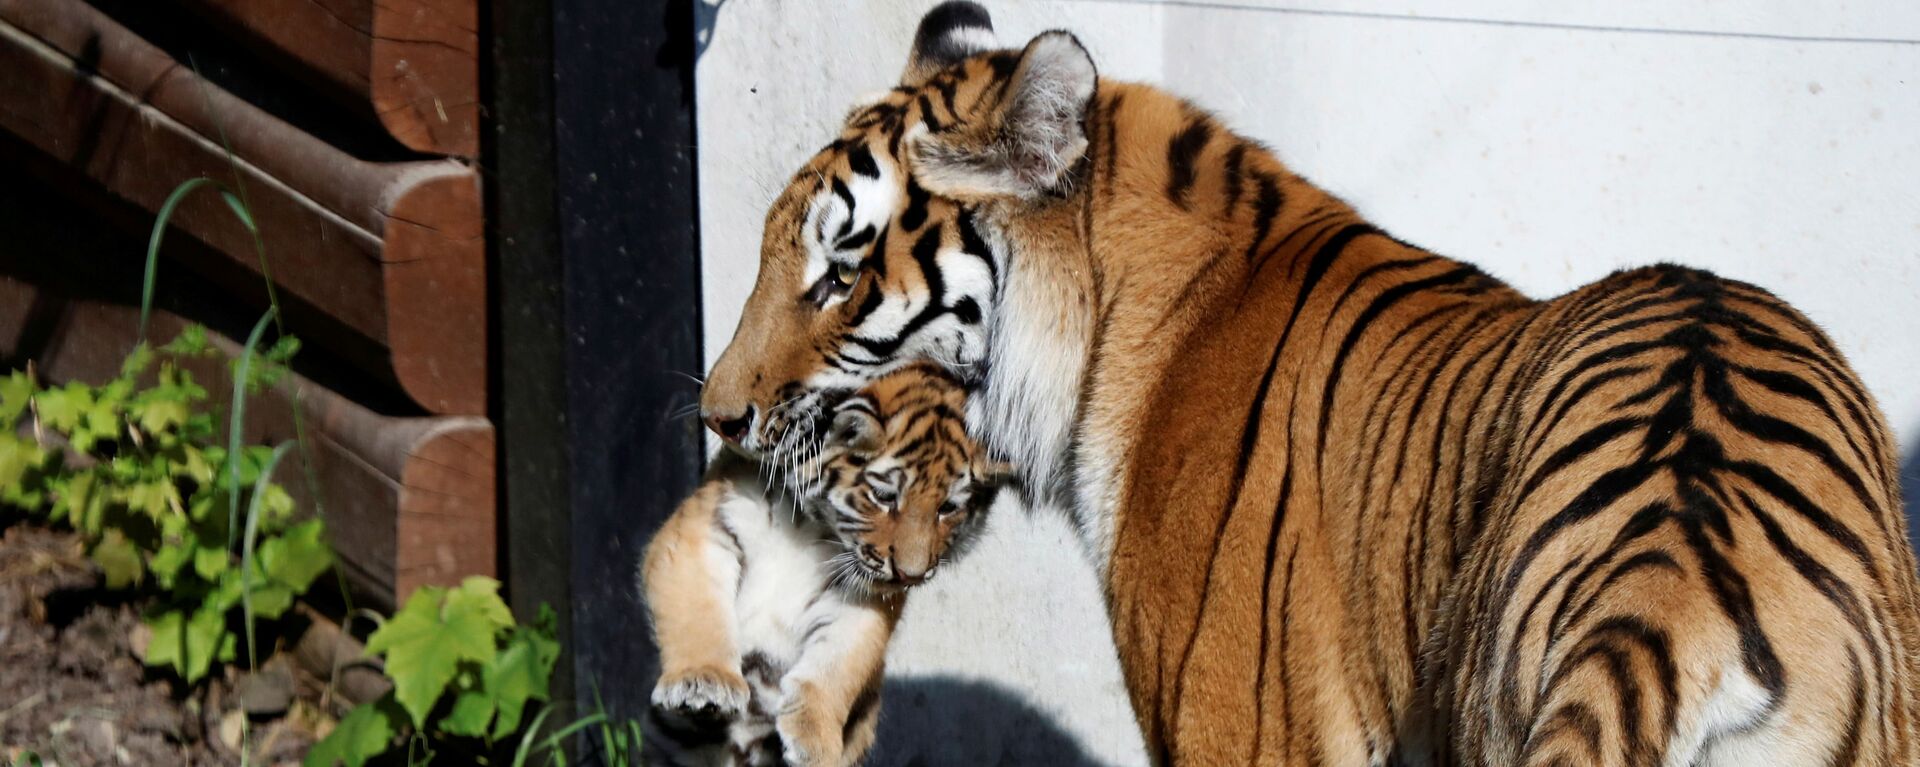 Hổ Amur với con mới sinh trong sở thú ở Plock, Ba Lan - Sputnik Việt Nam, 1920, 04.08.2021